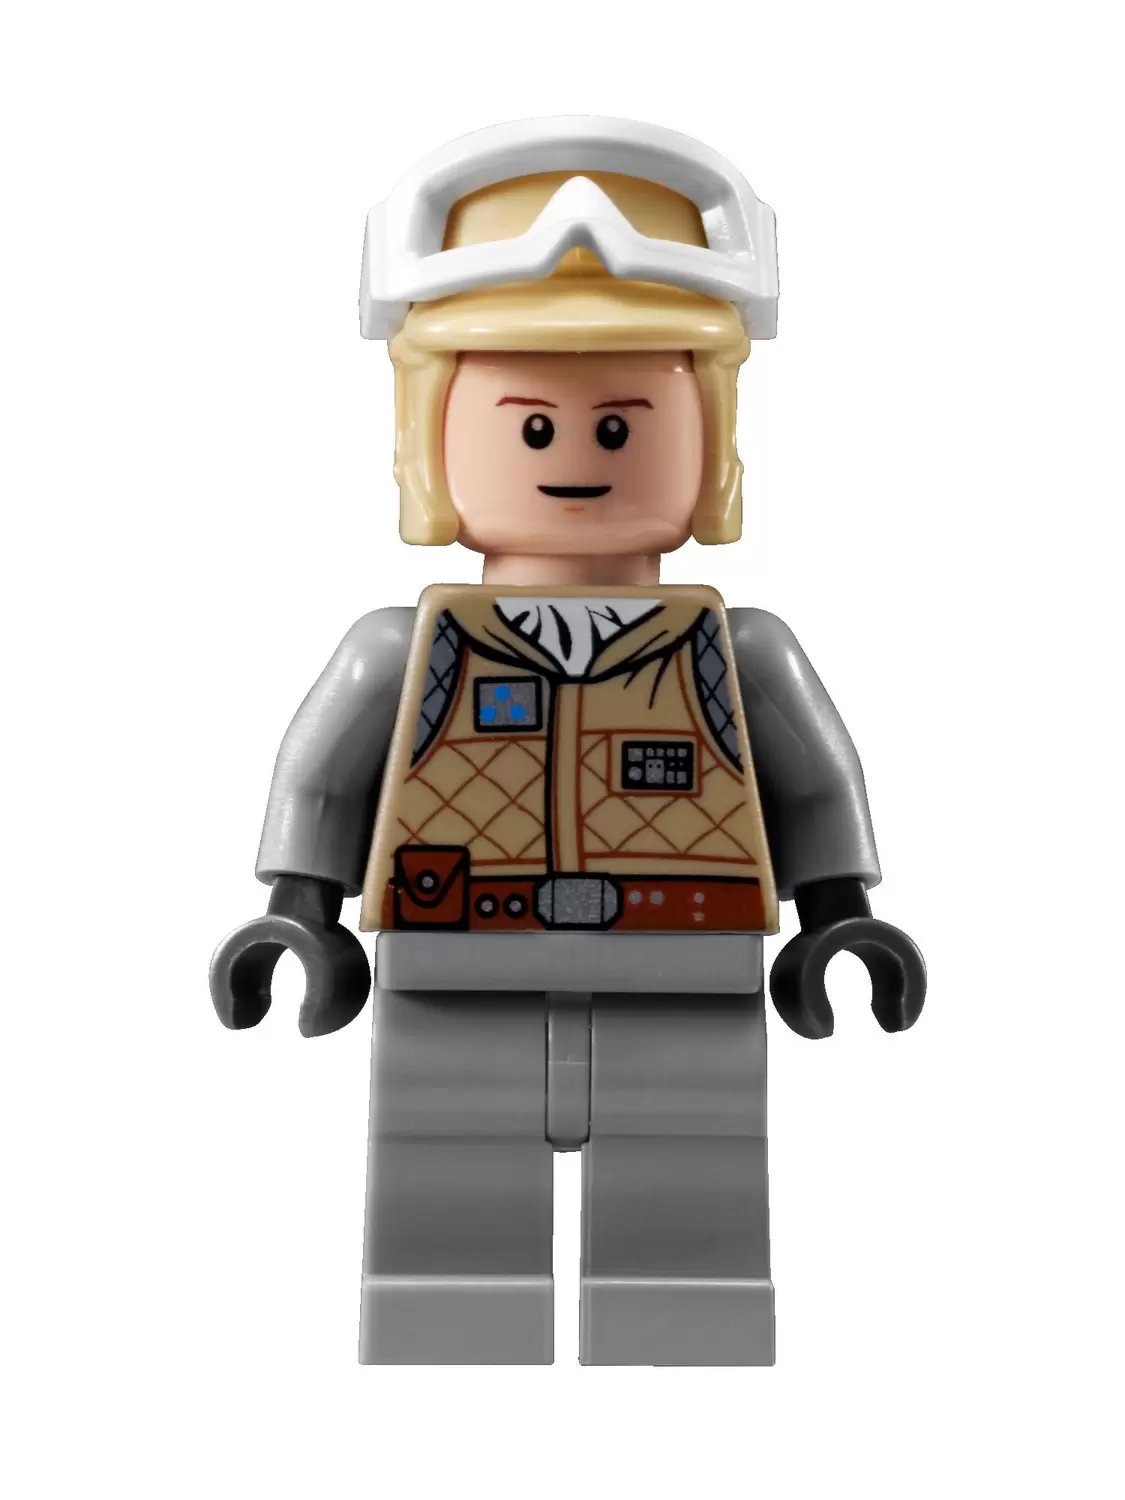 Lego Star Wars Figur sw098 Luke Skywalker Hoth 8089 